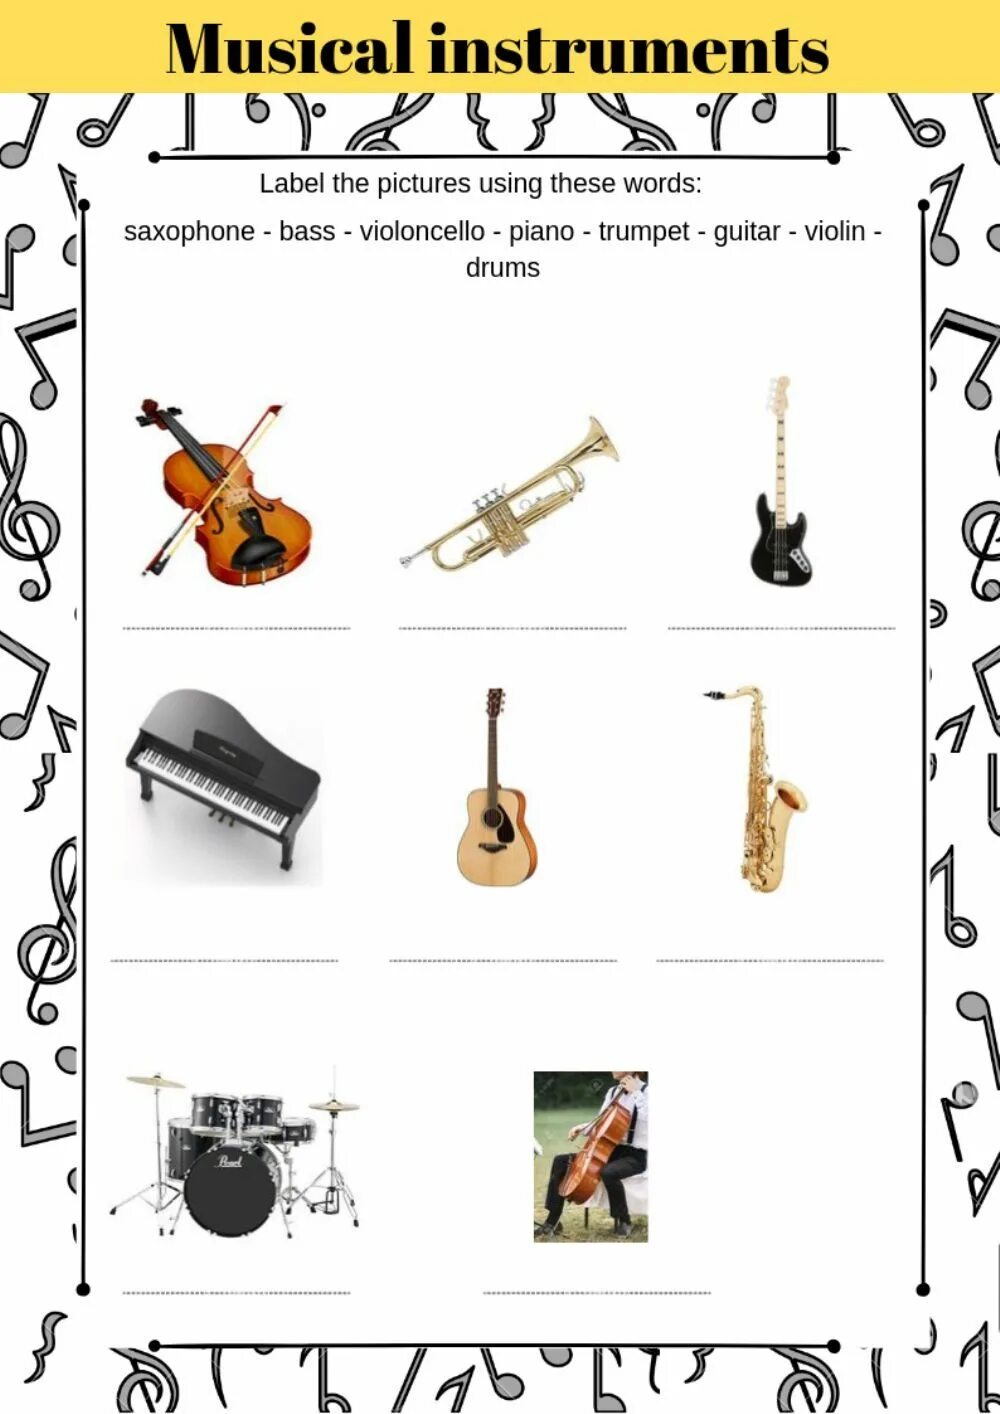 Музыкальные инструменты задания. Музыкальные инструменты Worksheets. Интересные музыкальные инструменты. Музыкальные инструменты in English.